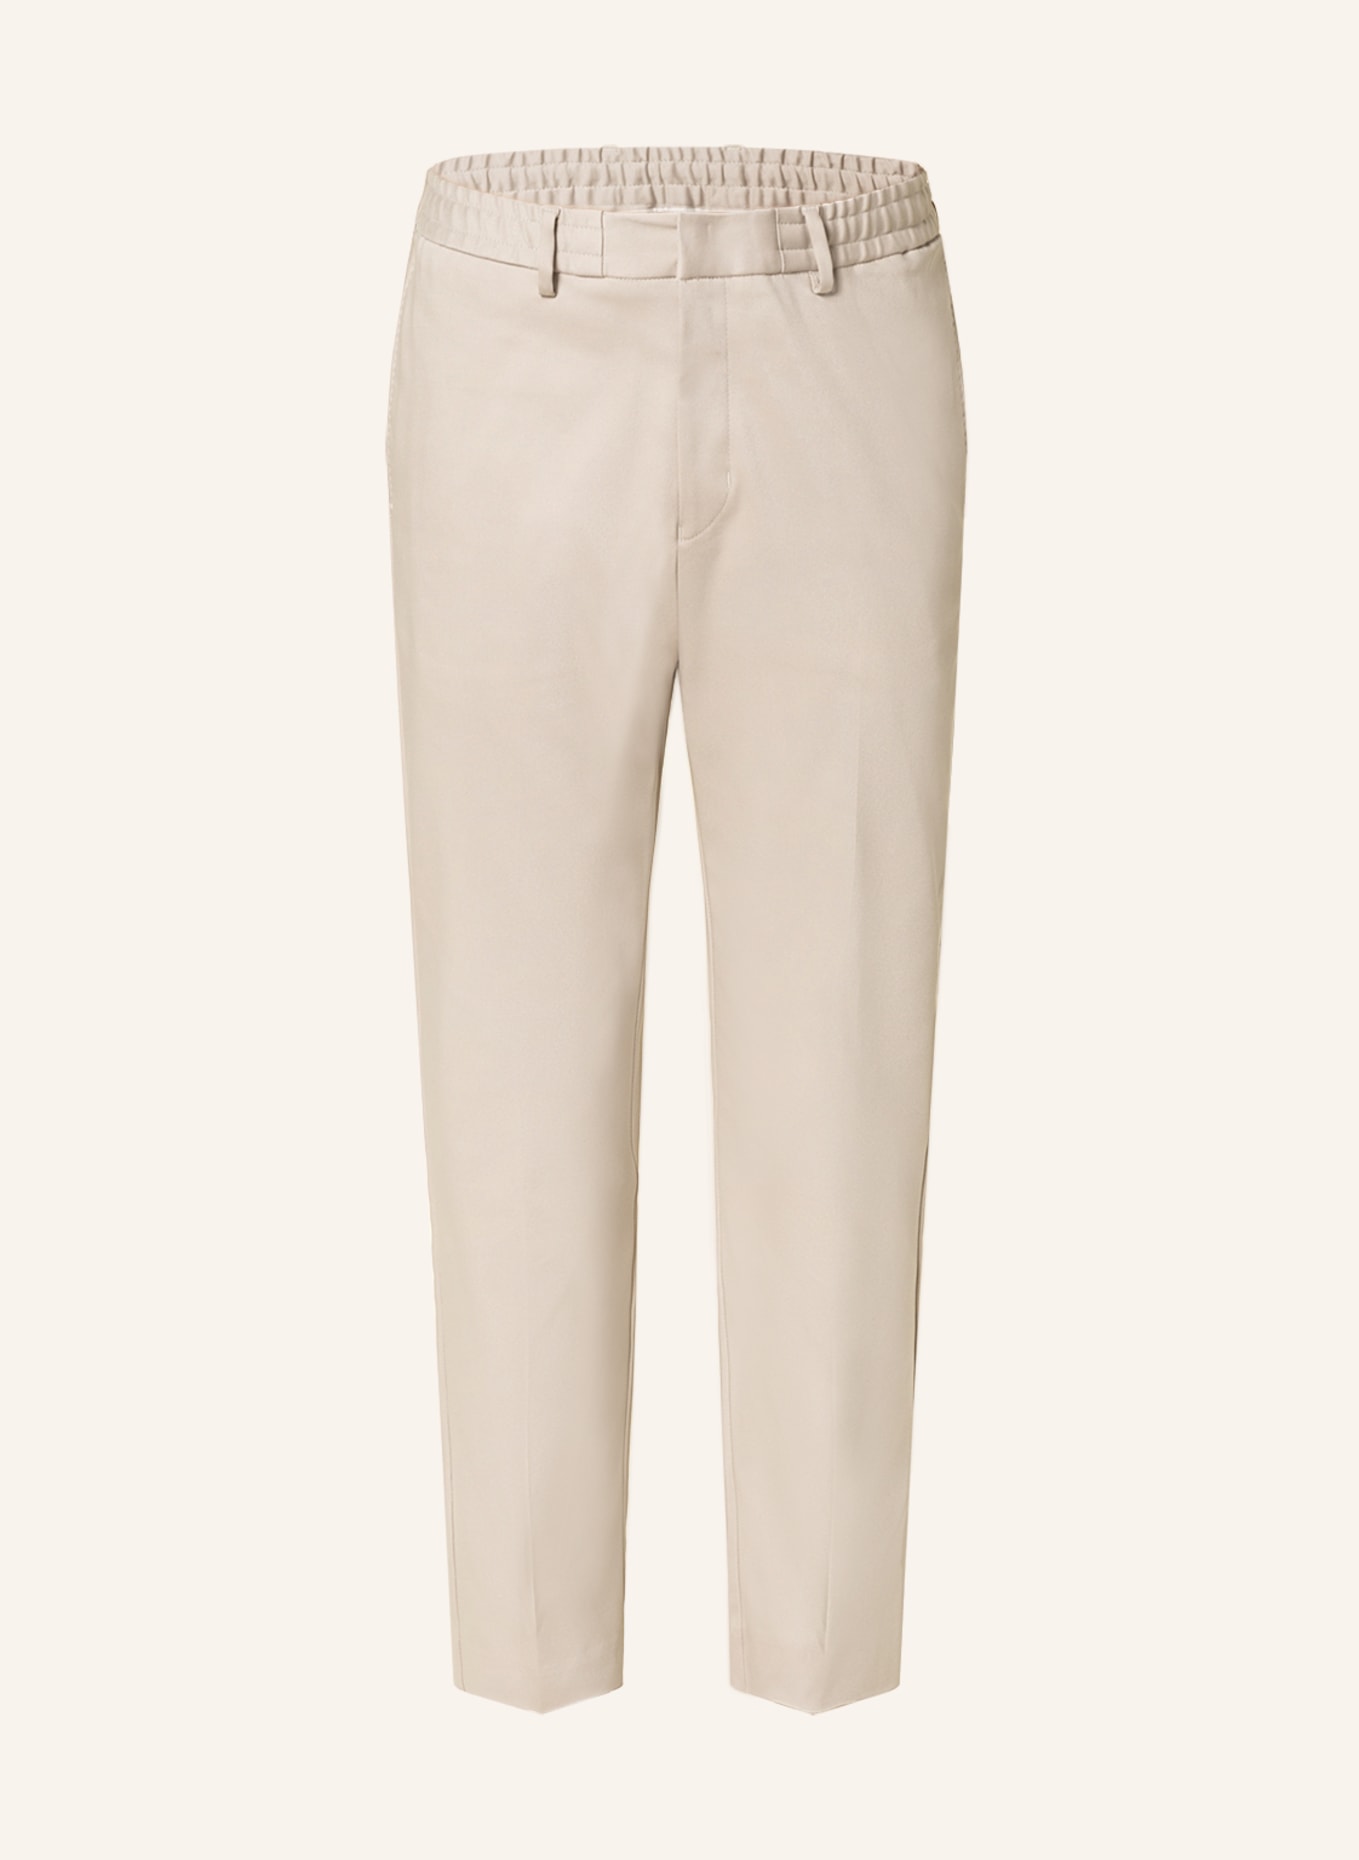 TIGER OF SWEDEN Spodnie garniturowe TRAVEN extra slim fit, Kolor: 13Q Ivory (Obrazek 1)